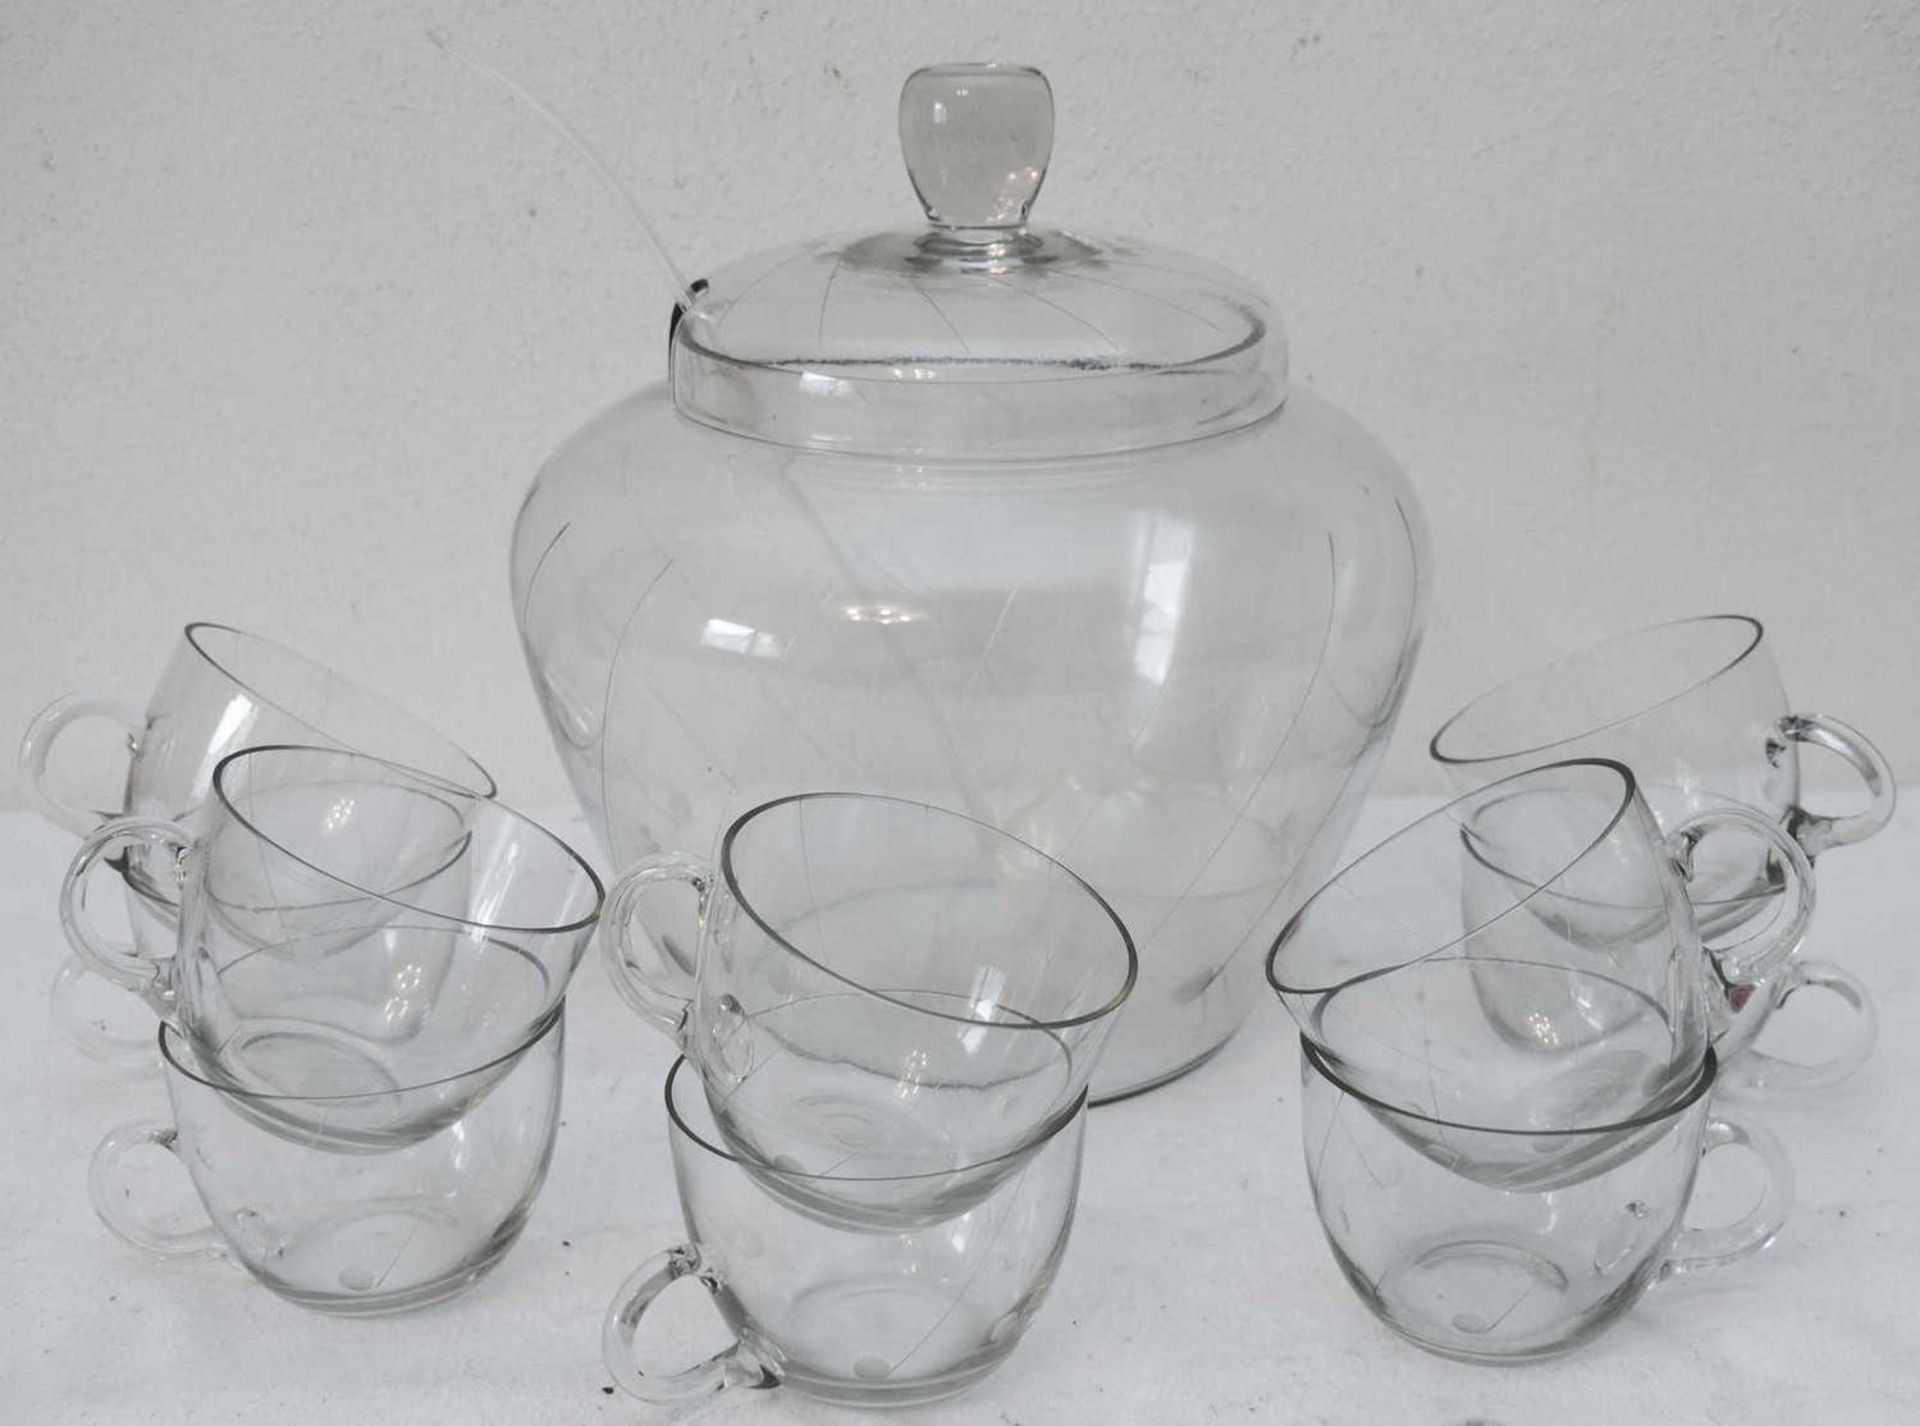 Bowle - Service, Glas, bestehend aus 10 Gläsern, Bowle-Gefäß mit Deckel und Bowle-Schöpfkelle,